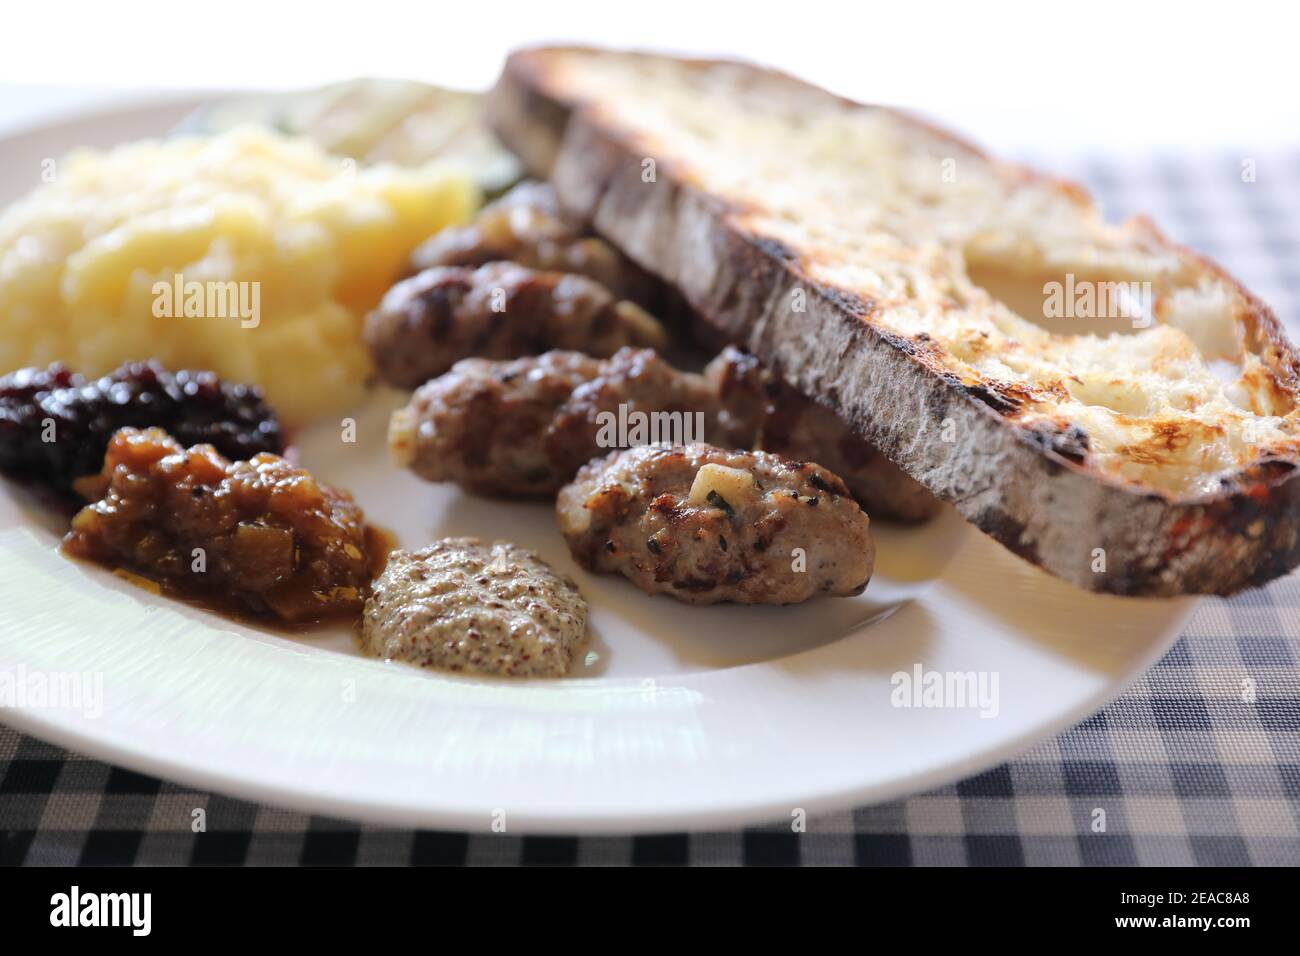 Saucisse grillée avec pain, pommes de terre et sauce à la confiture de fruits cuisine Banque D'Images